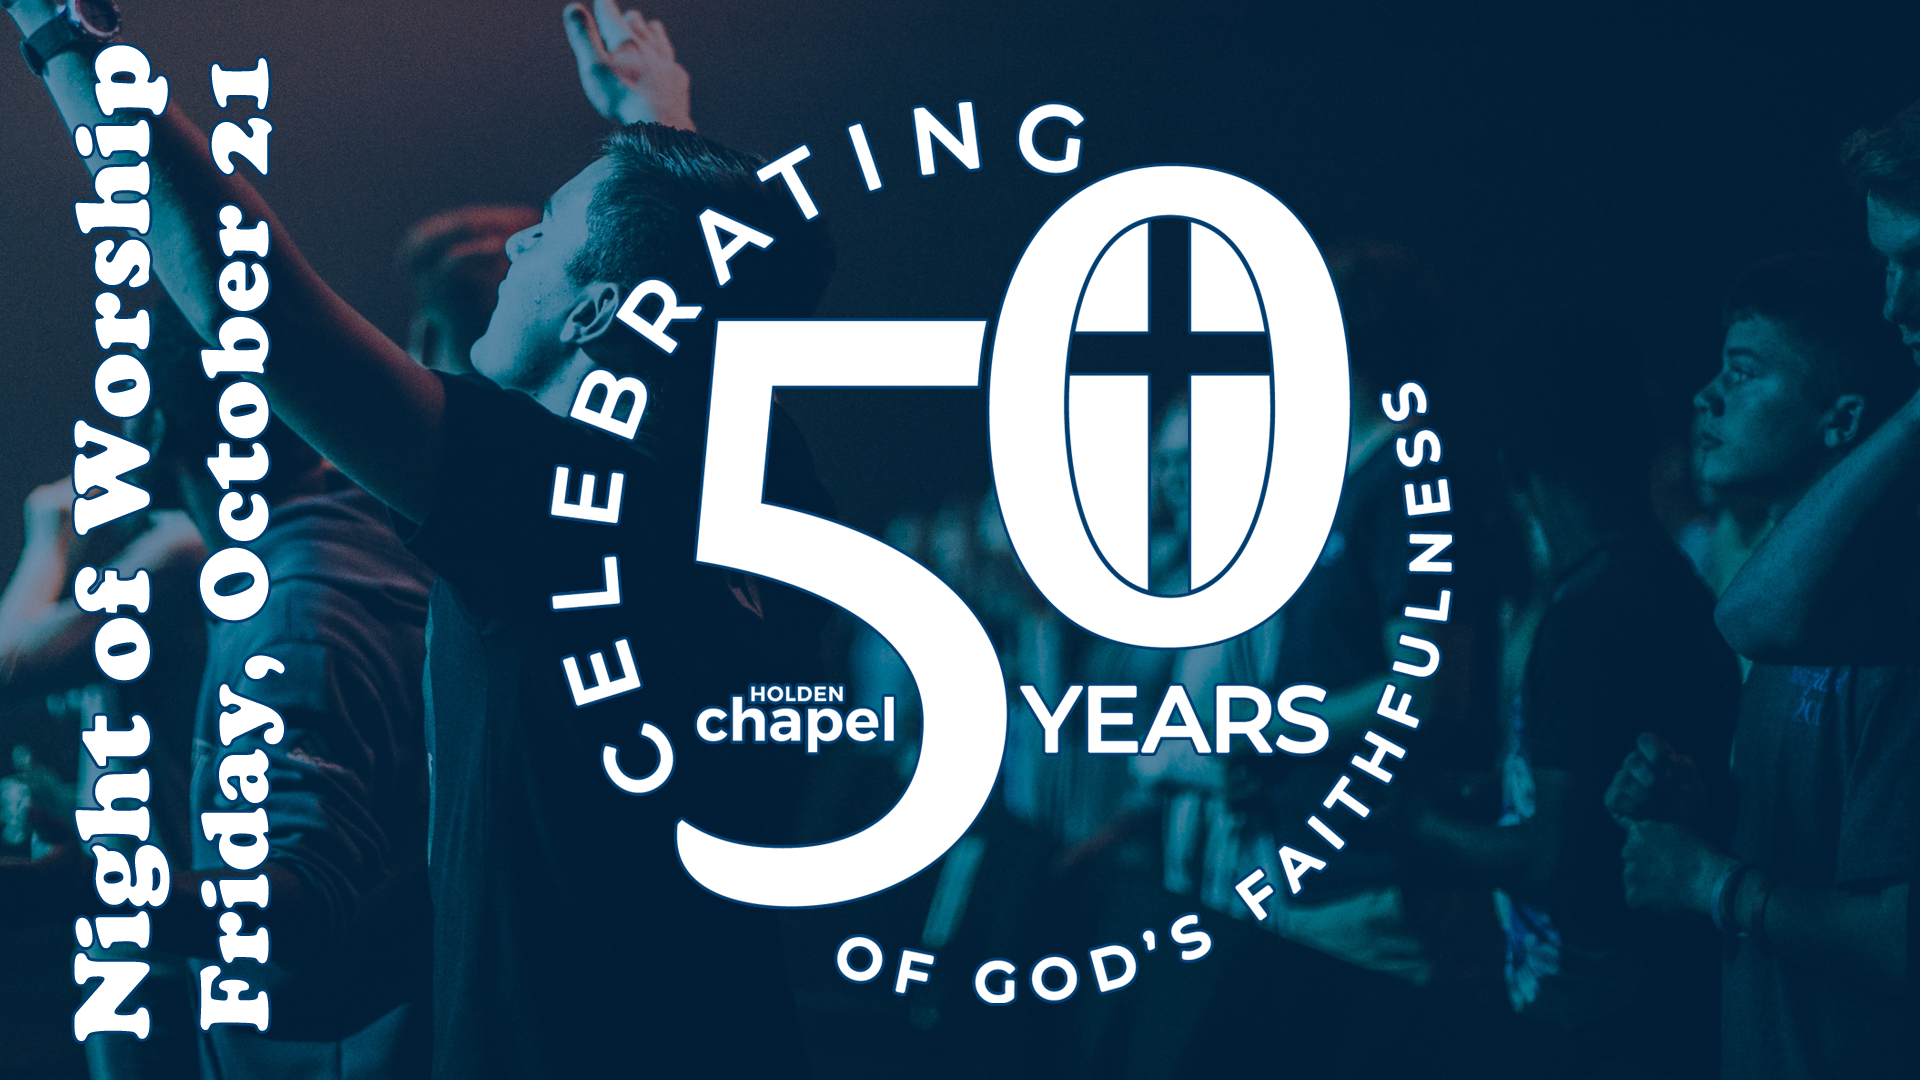 1-50th anniversary - worship image